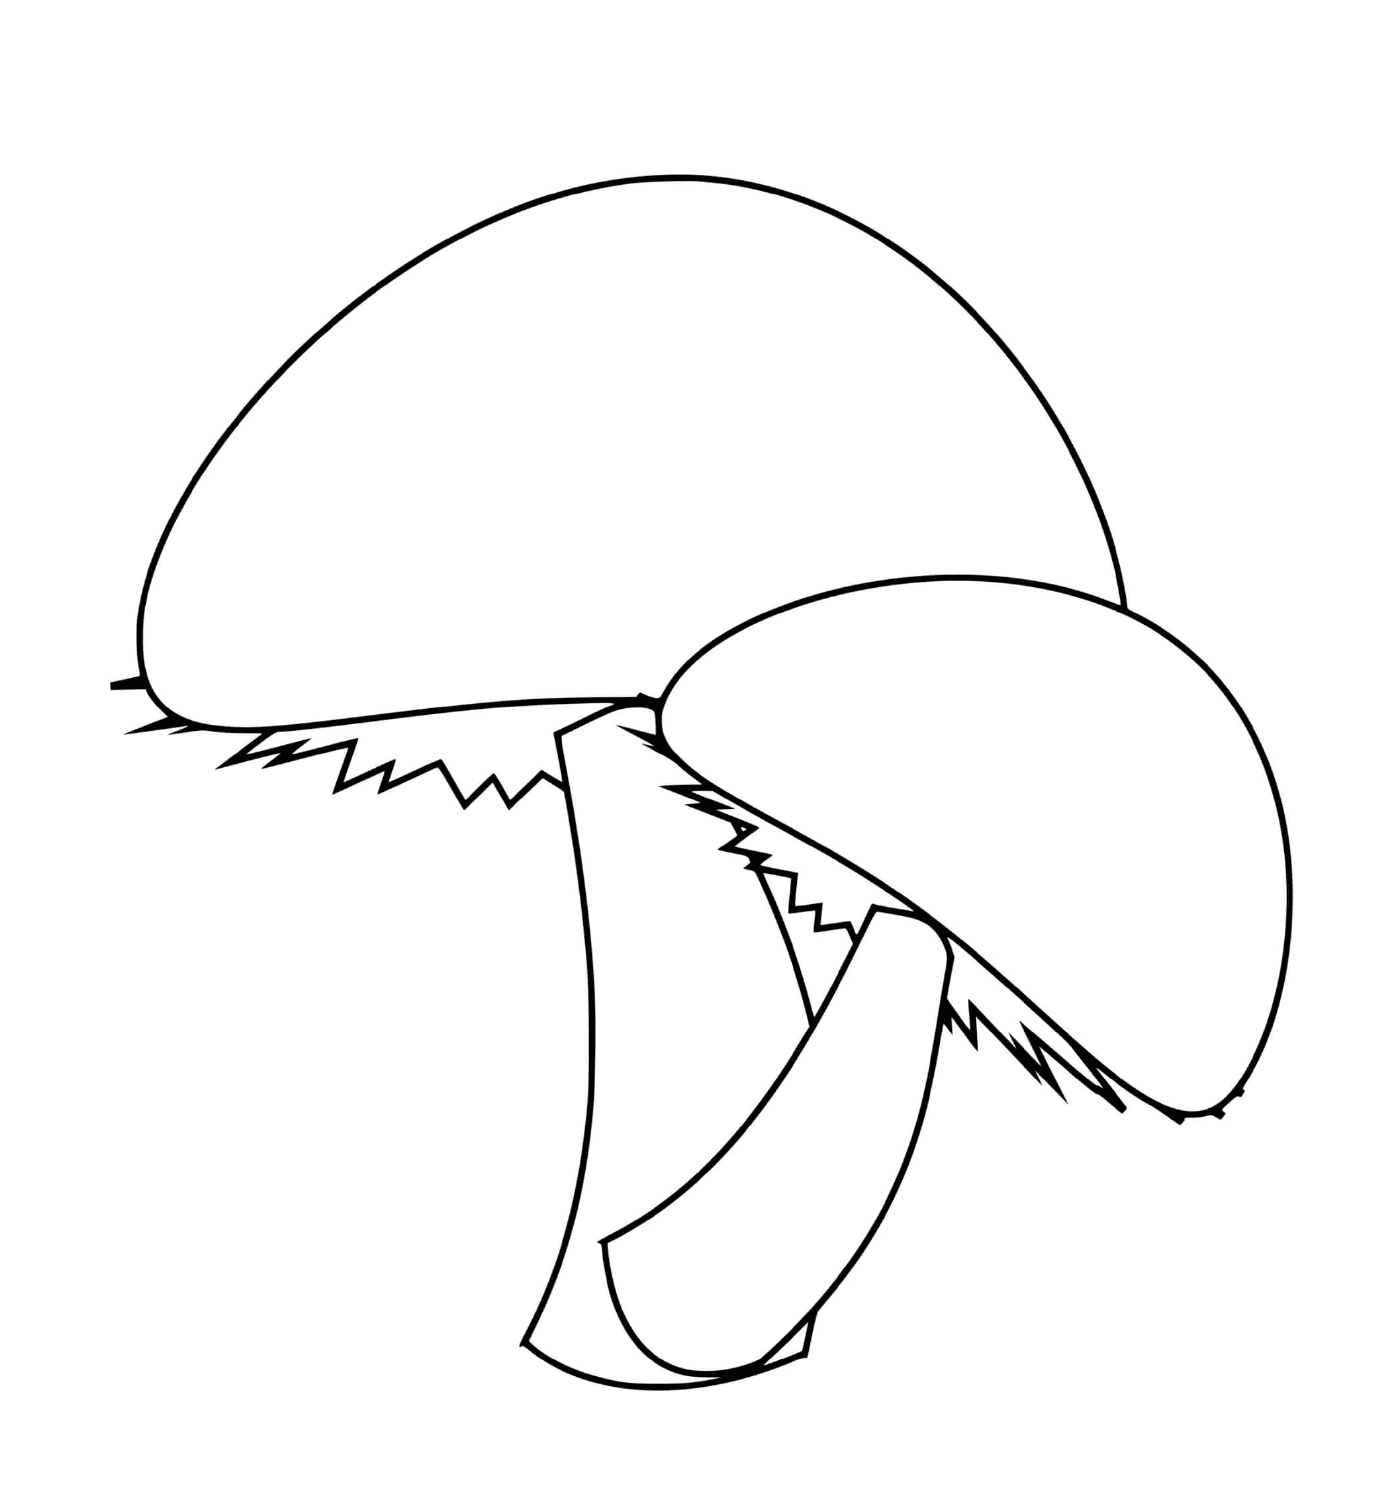 deux champignons simples